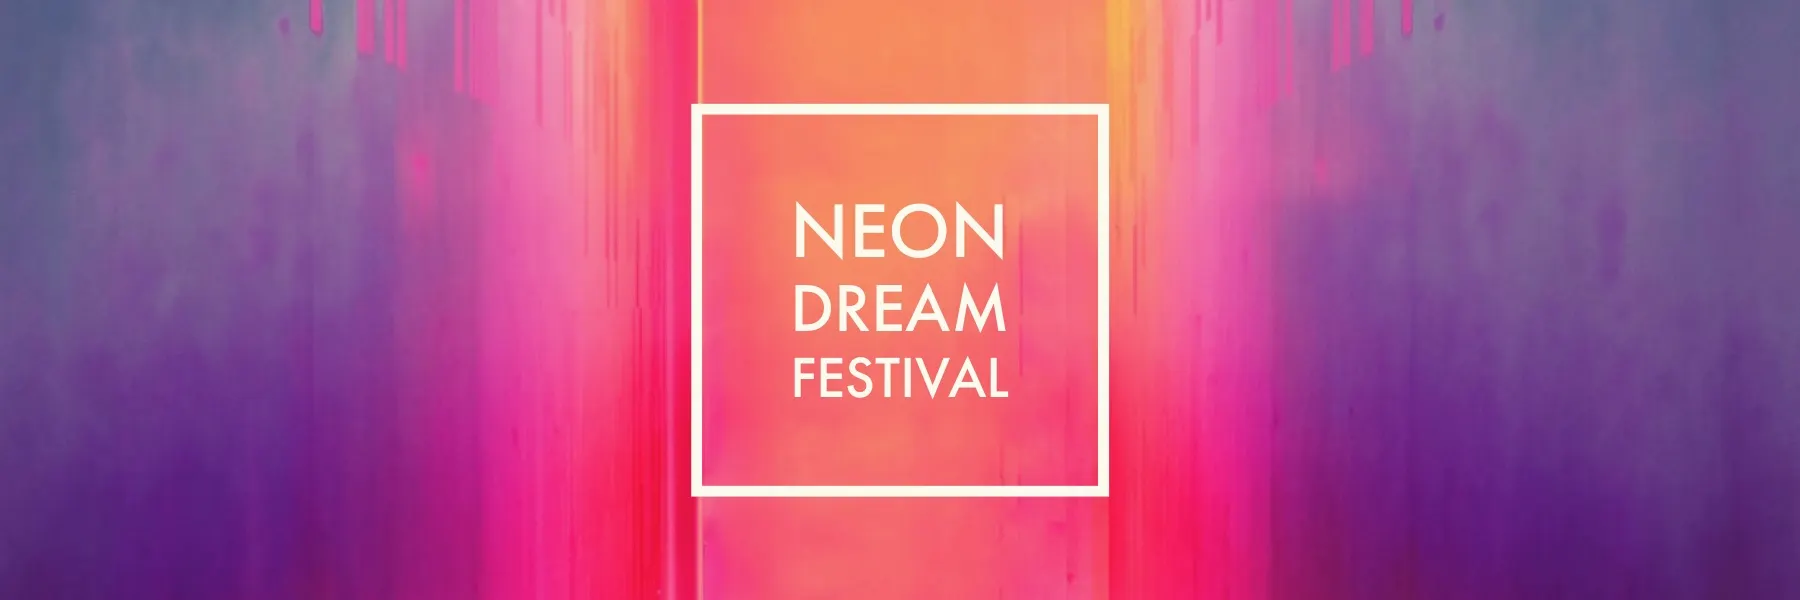 Colorful Neon Dream Festival Banner